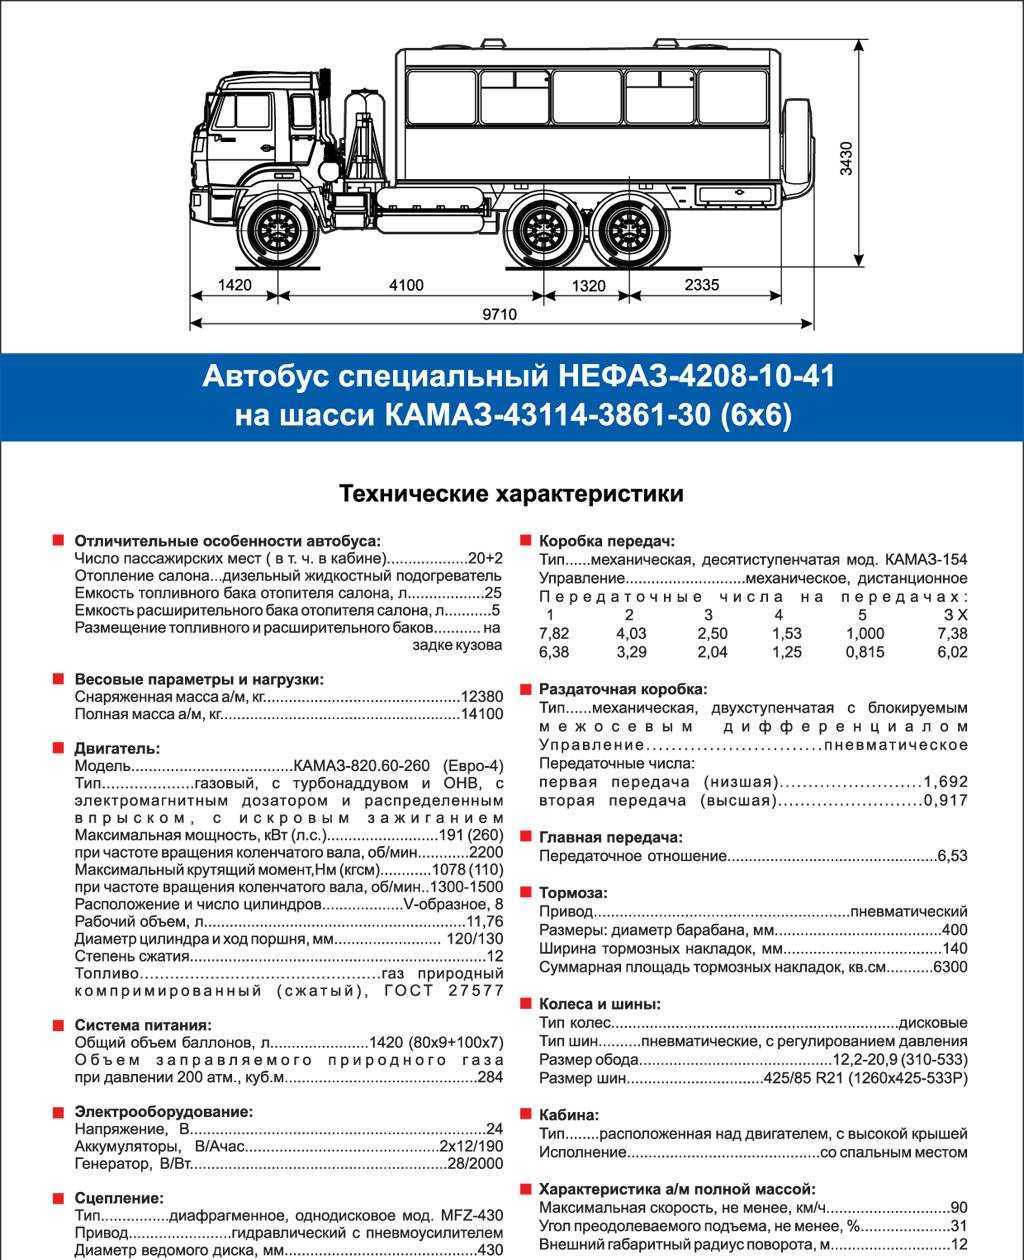 Камаз-5320 технические характеристики, двигатель и коробка передач, расход топлива, размеры и устройство кабины